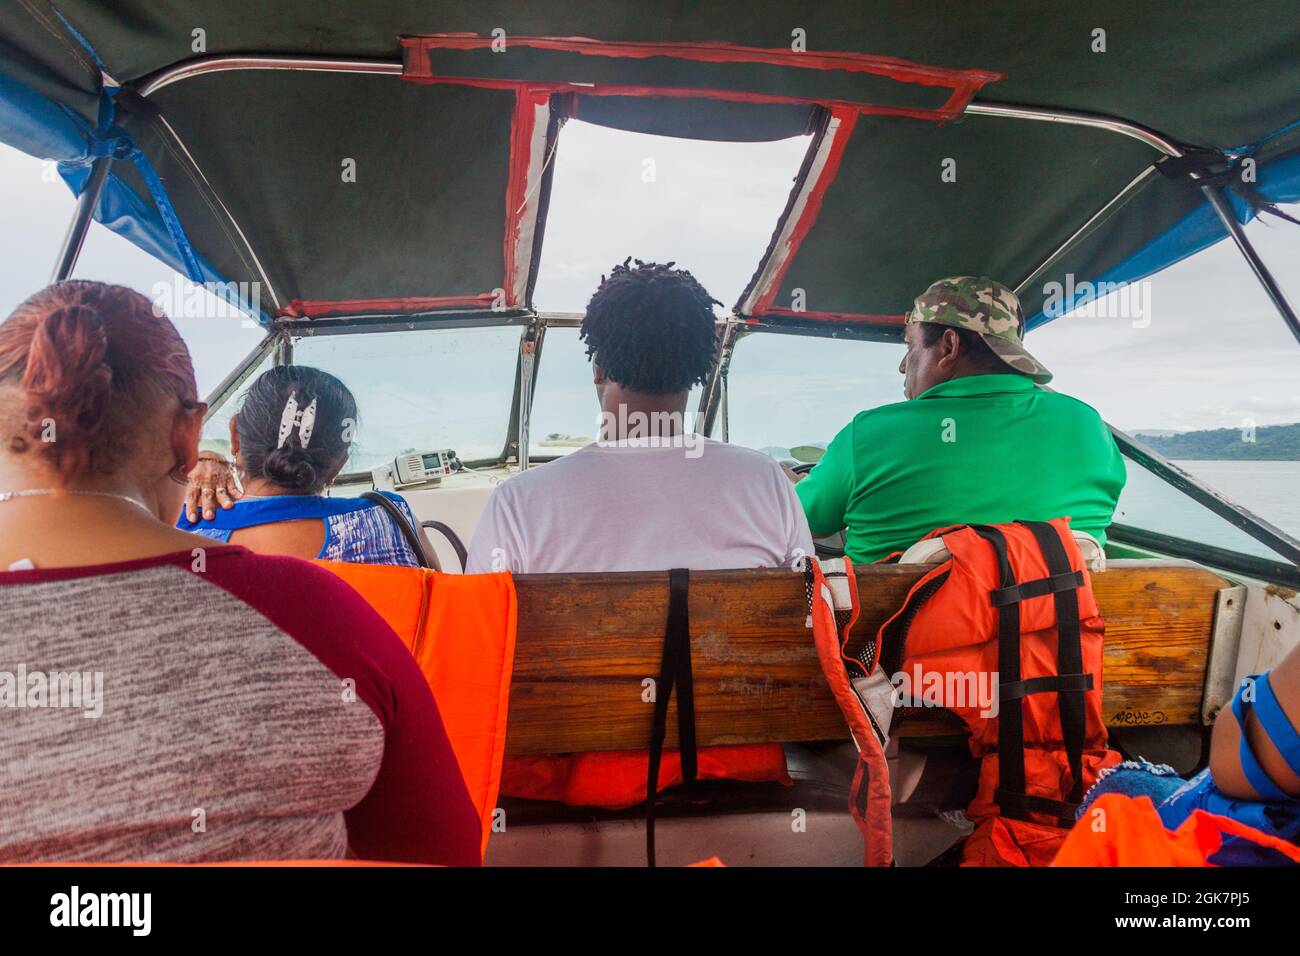 ALMIRANTE, PANAMA - 19 MAGGIO 2016: Persone in traghetto che viaggiano dal villaggio di Almirante sulla terraferma alla città di Bocas del Toro sull'isola di Colon. Foto Stock